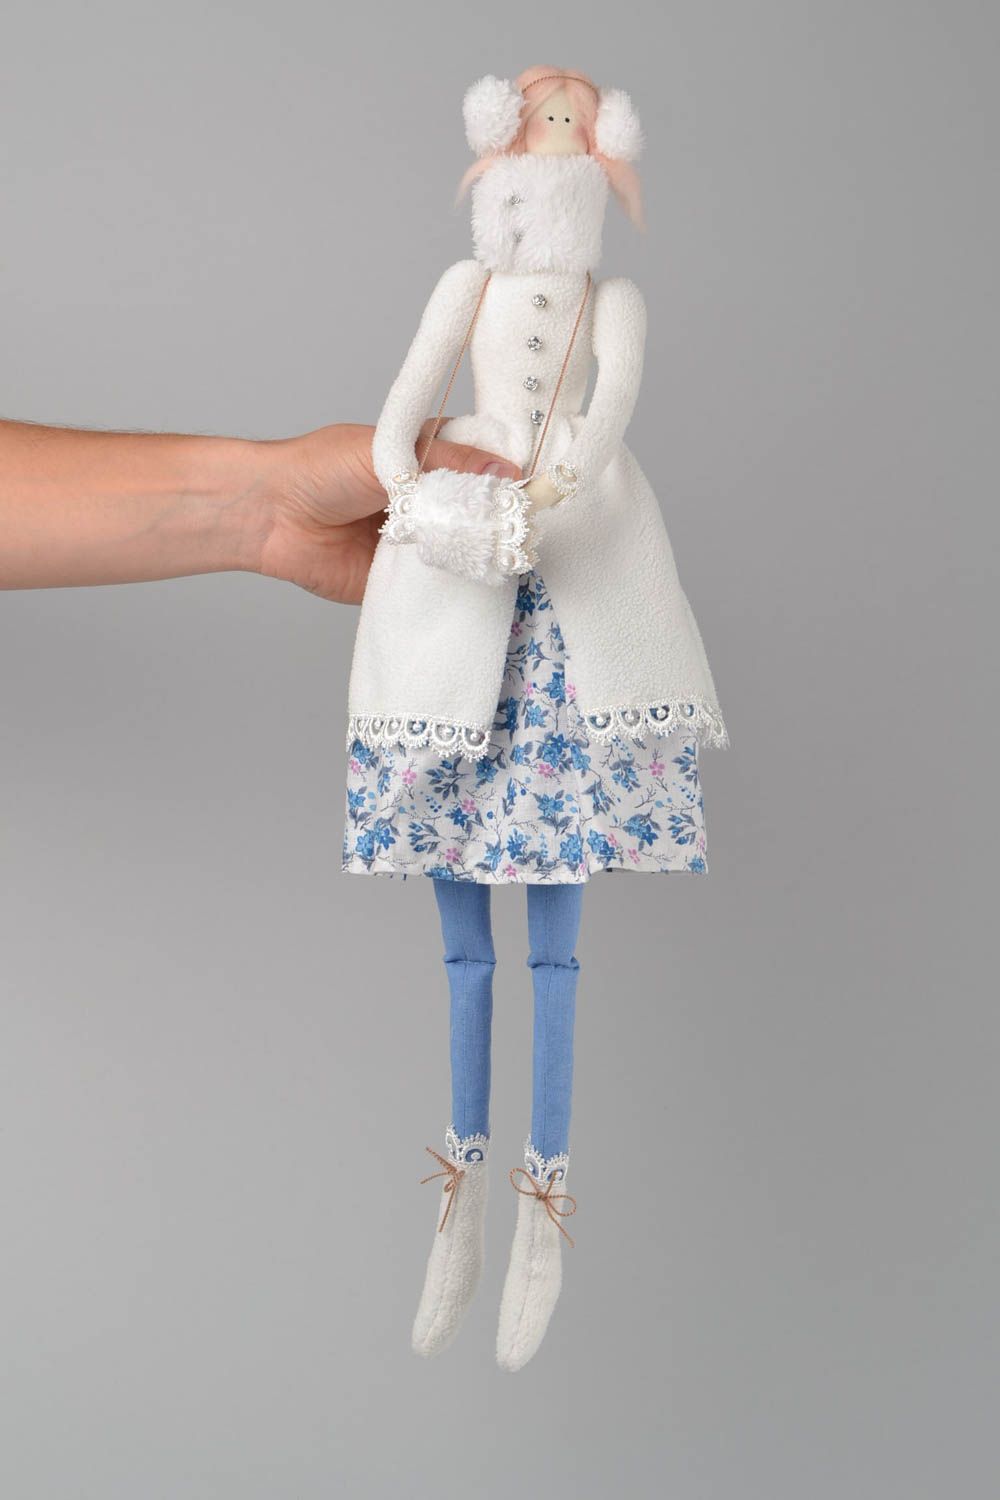 Interieur Puppe Mädchen im weißen Mantel handmade Schmuck für Haus Dekor foto 2